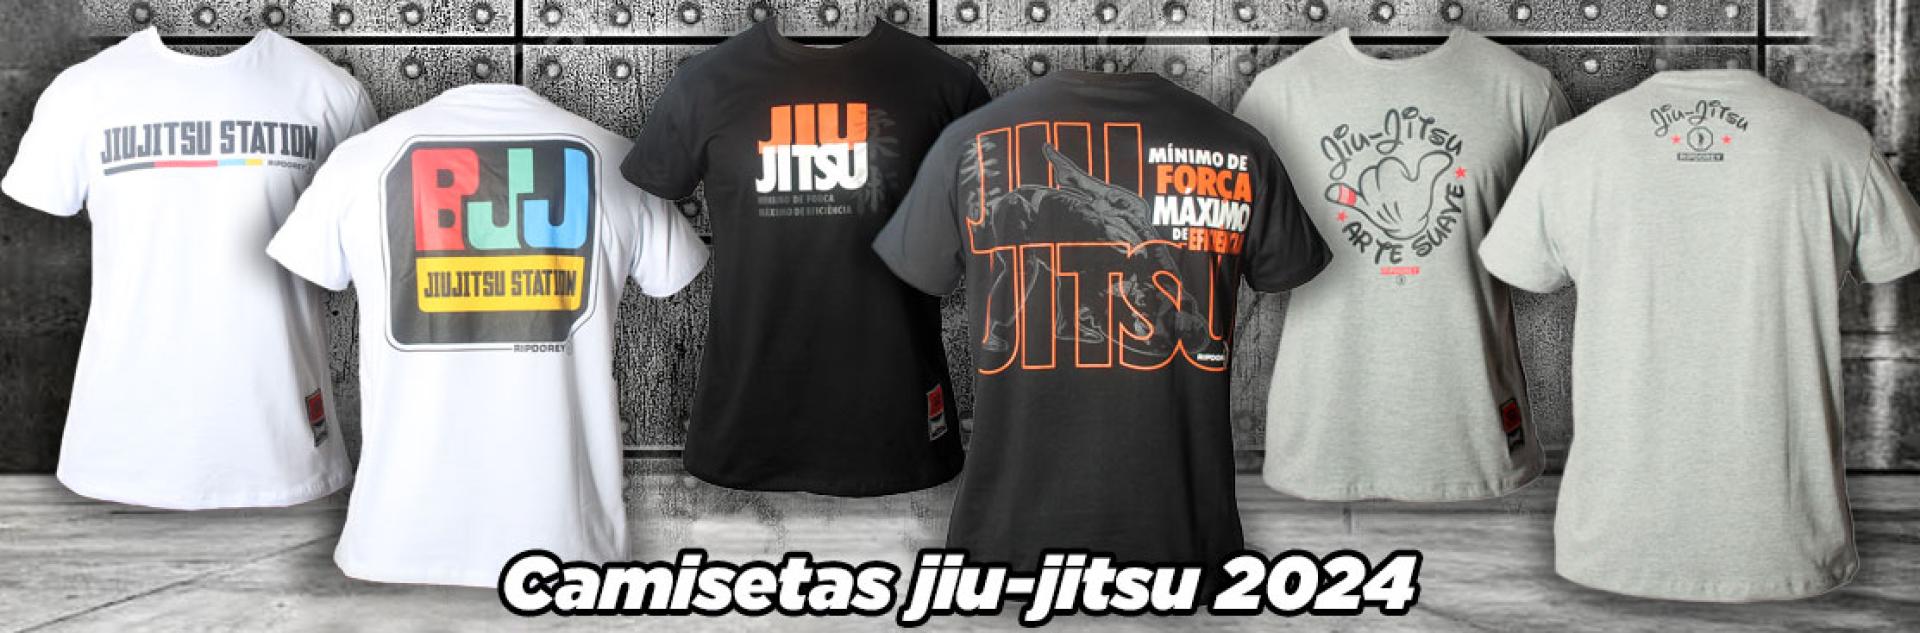 Camisetas Jiu-Jitsu 2024